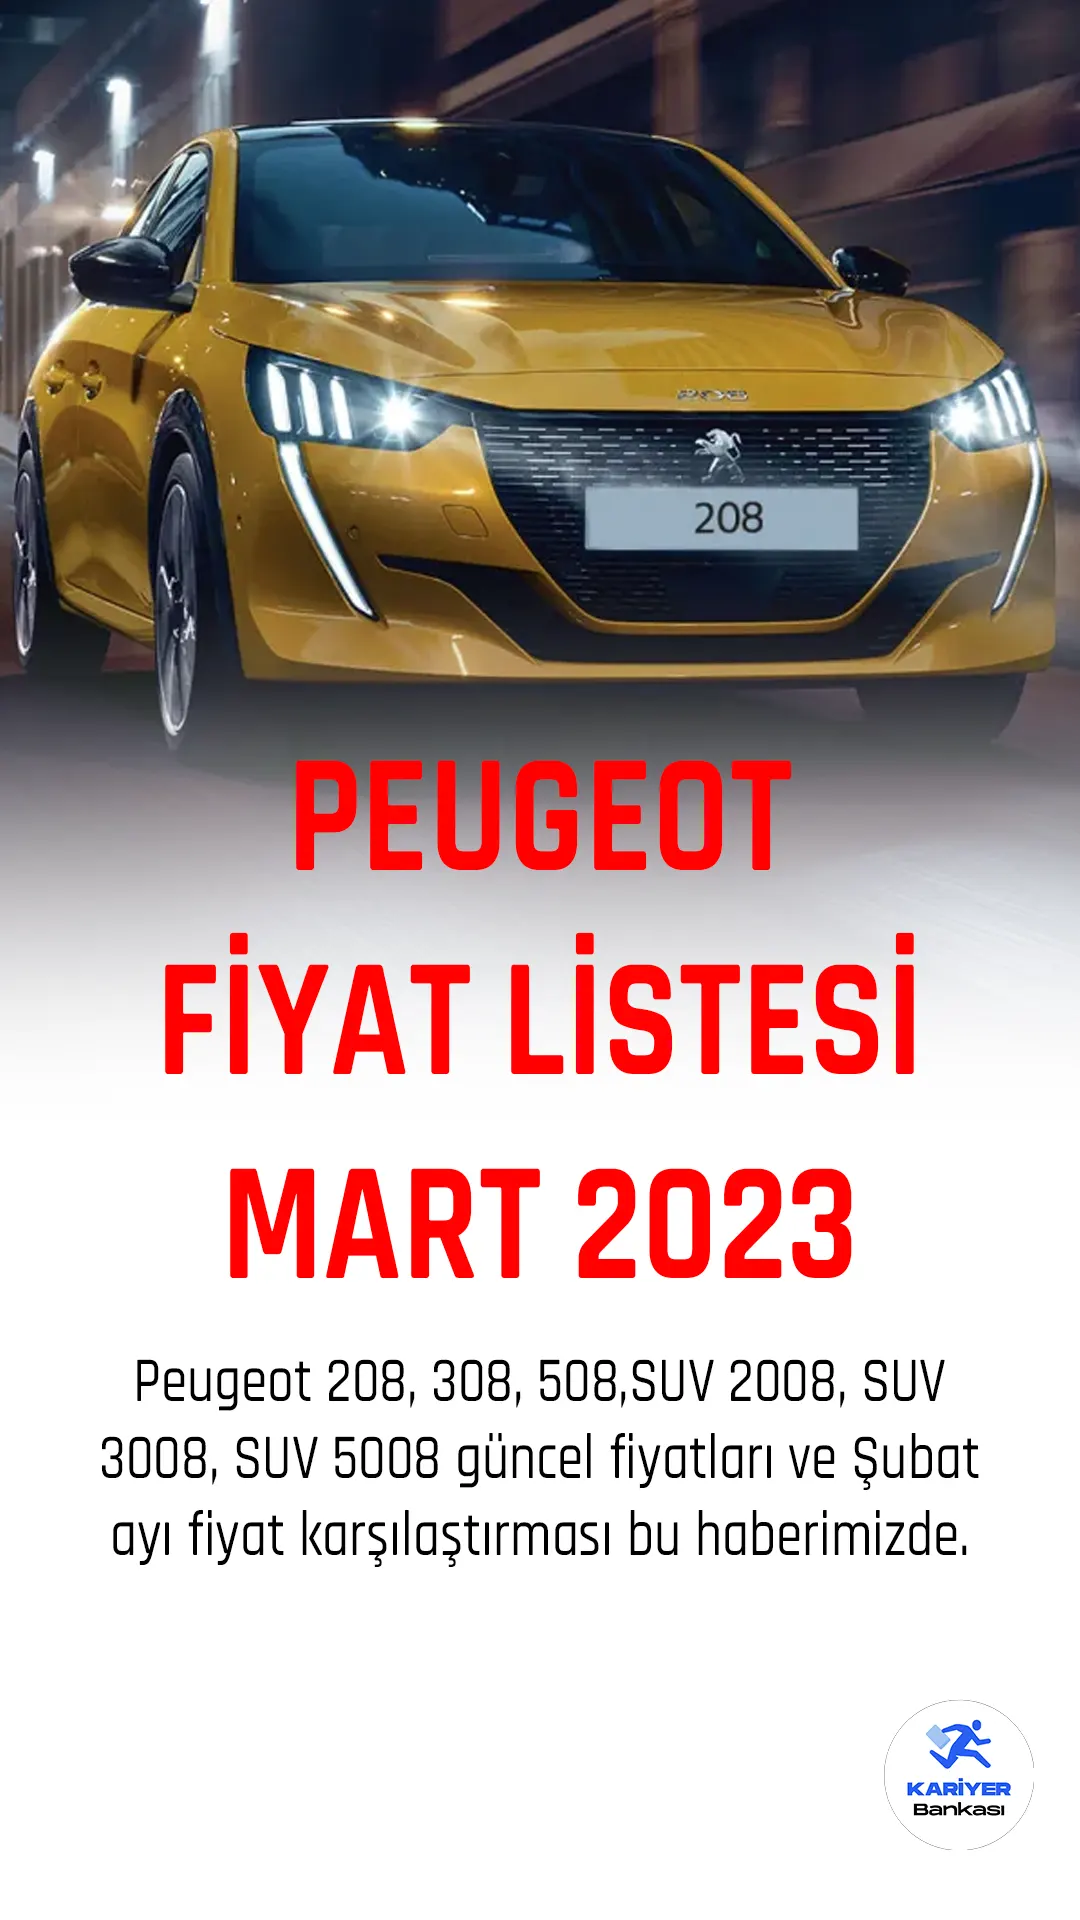 Peugeot fiyat listesi yayımlandı!